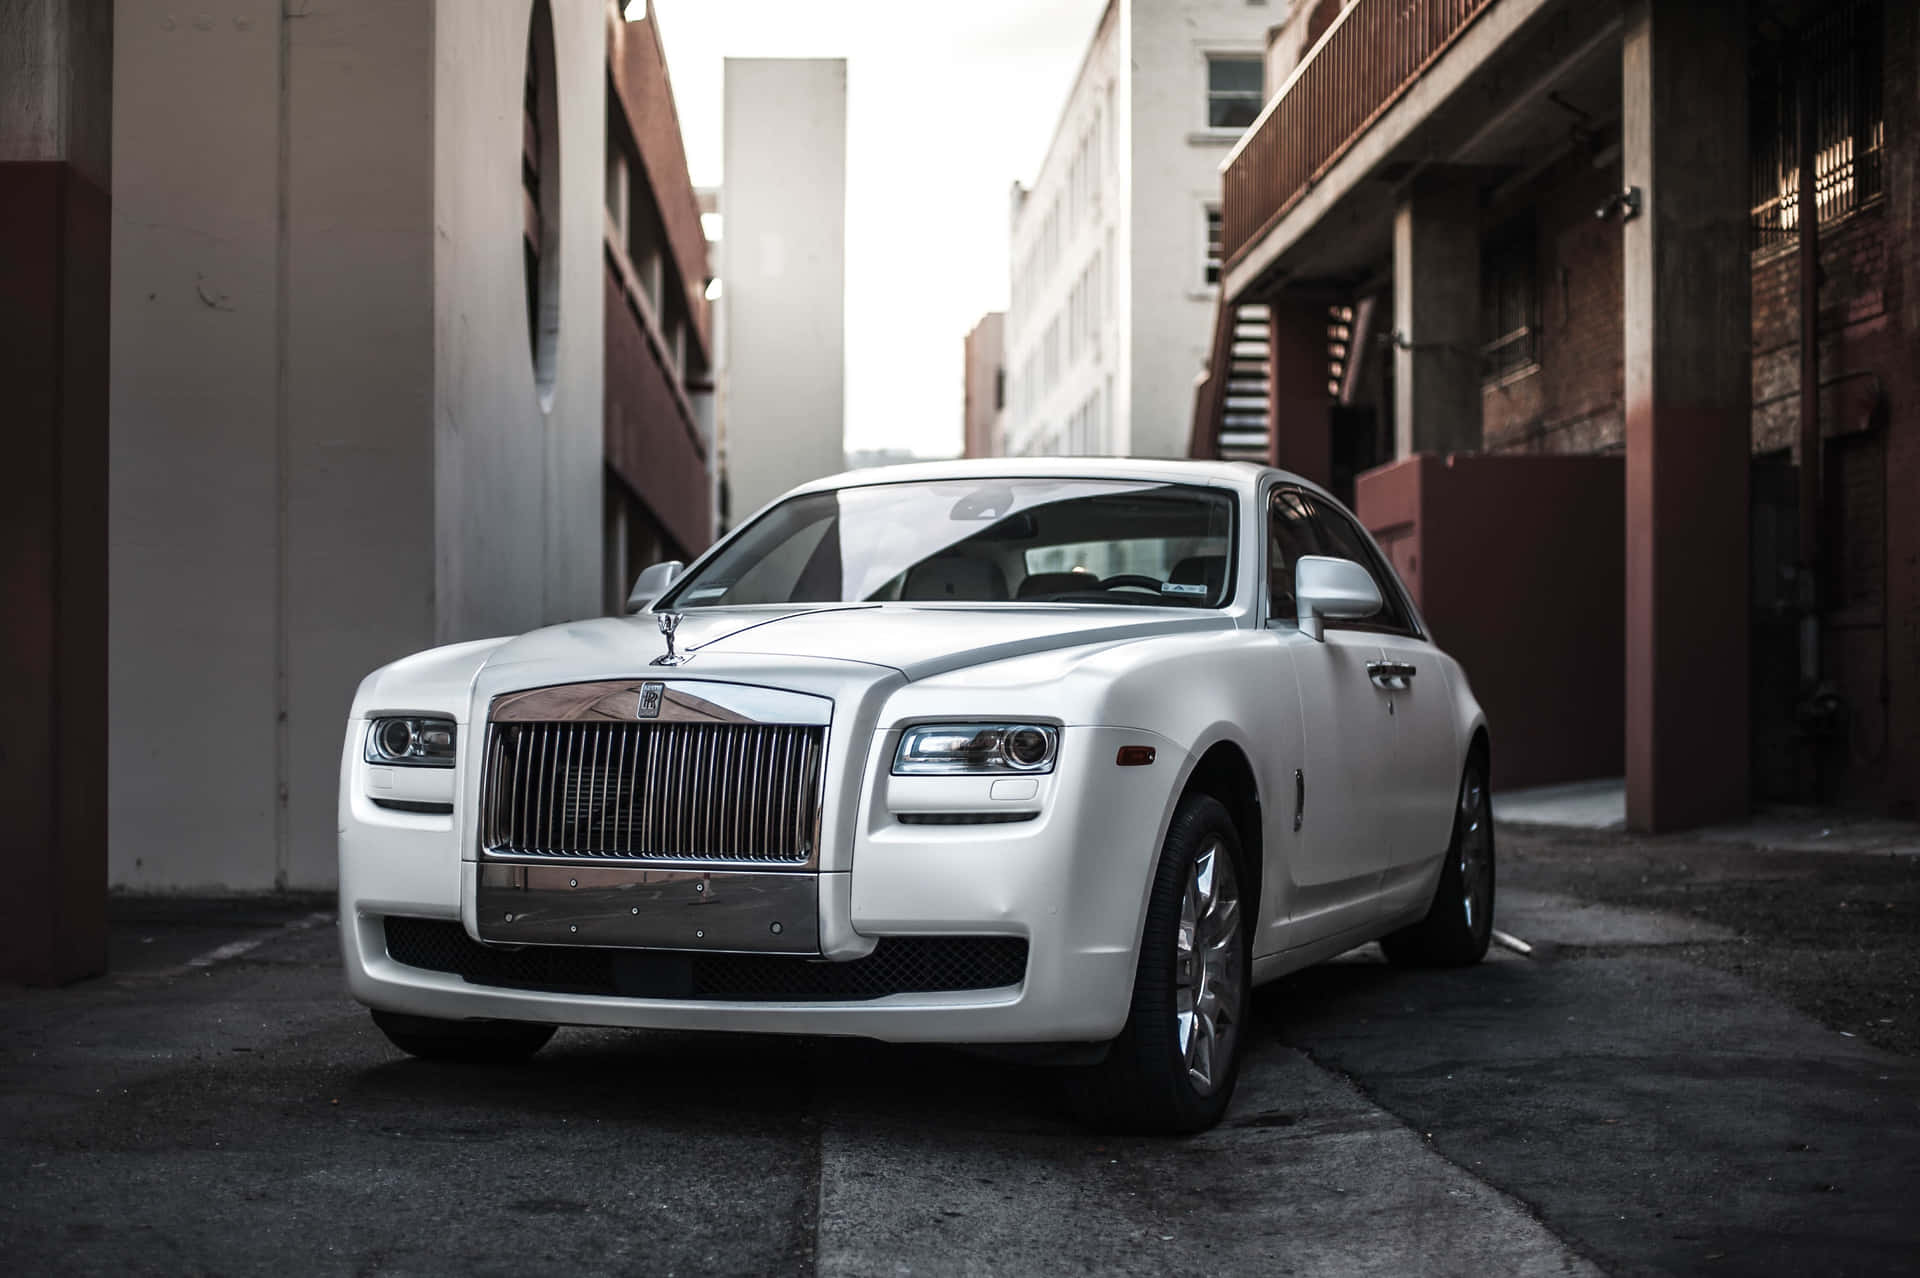 Unlujoso Rolls Royce Estacionado En Medio De Un Encantador Paisaje Natural.